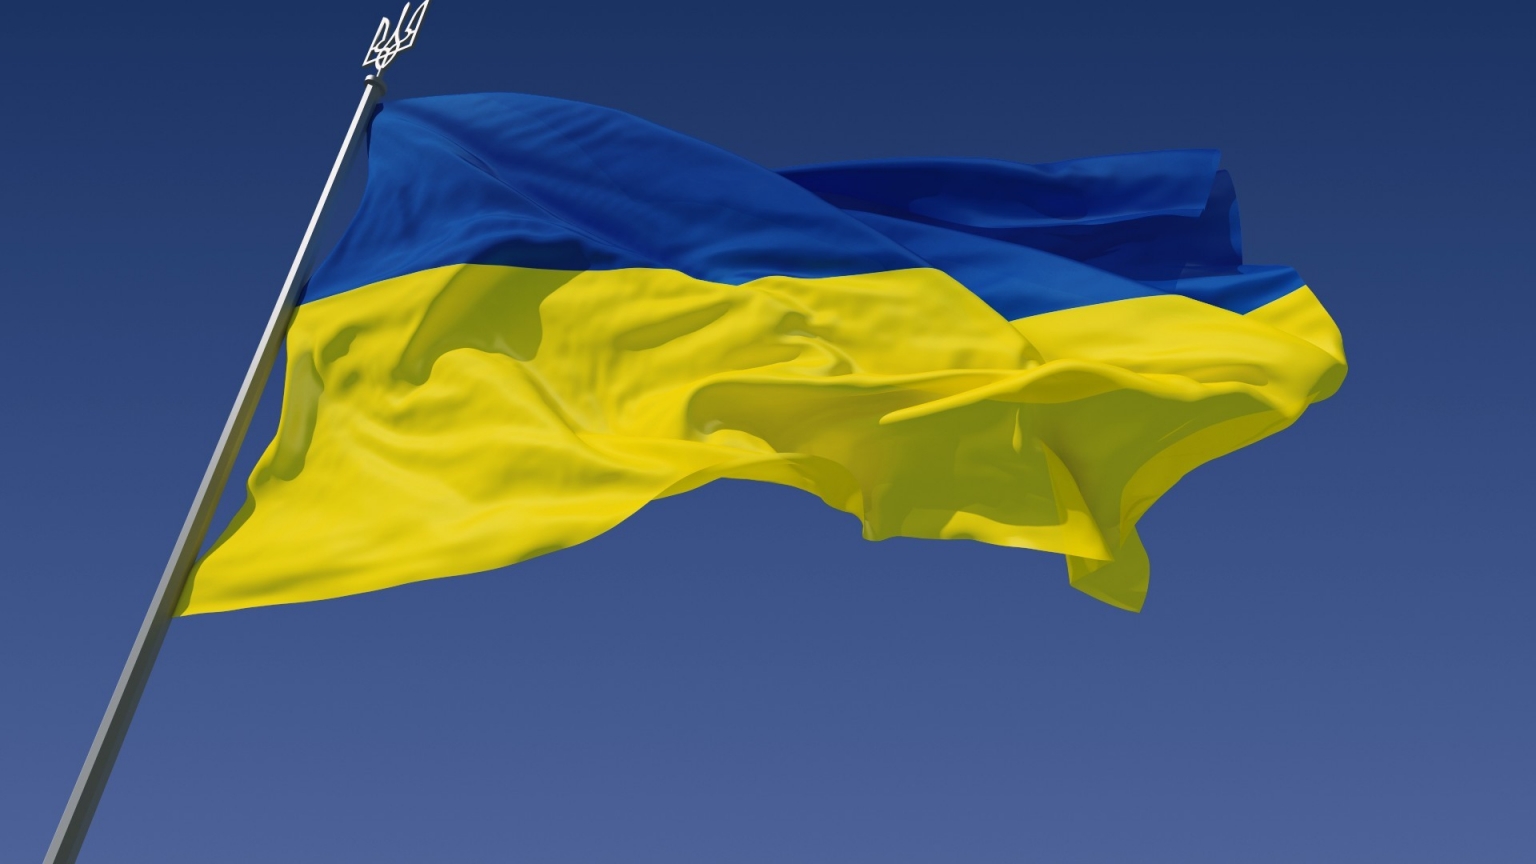 The Ukraine Flag for 1536 x 864 HDTV resolution